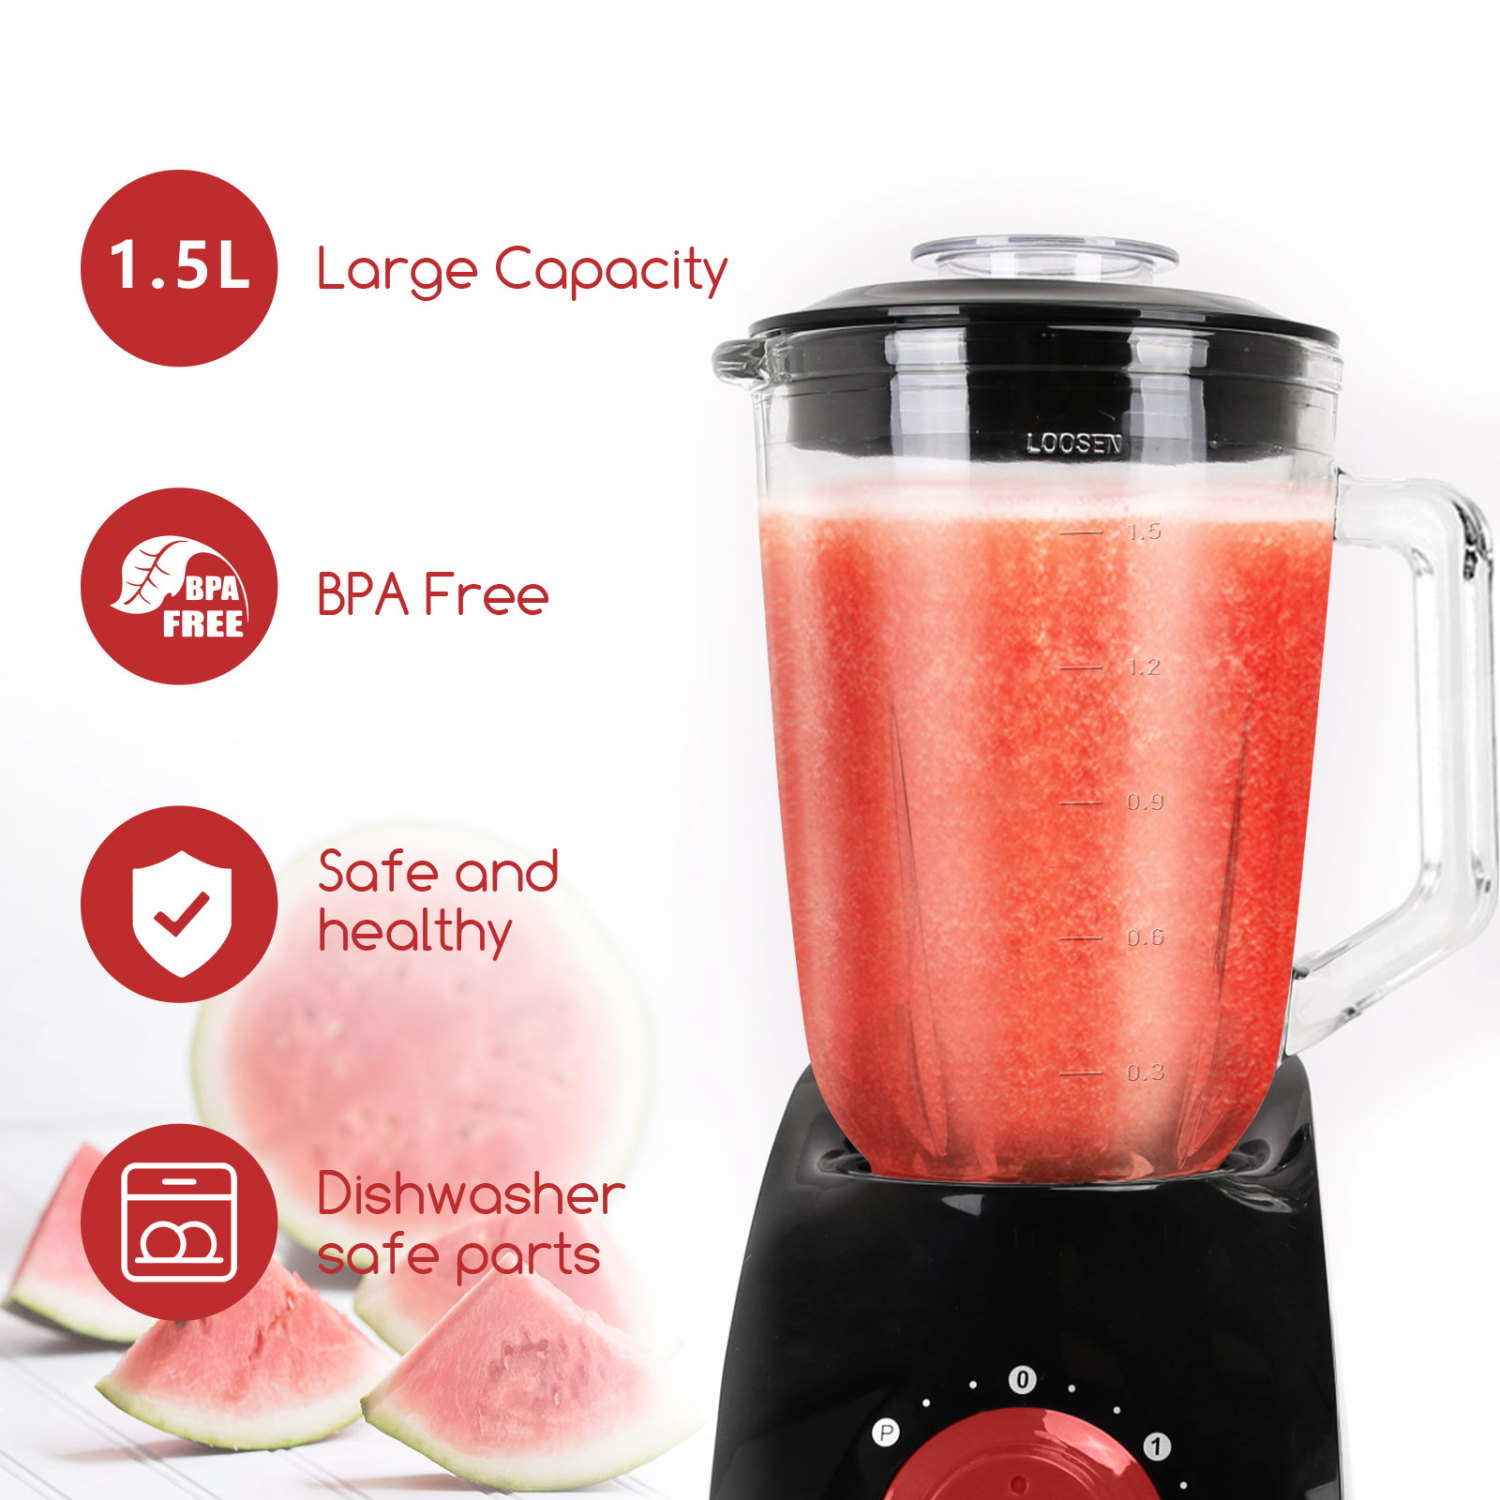 Aigostar Pomegranate 30JDF – Mixeur blender multifonction sans BPA. 750 W et deux vitesses, fonction glace pilée. Jarre en verre de 1,5 litres et 4 lames en acier inoxydable de qualité alimentaire.